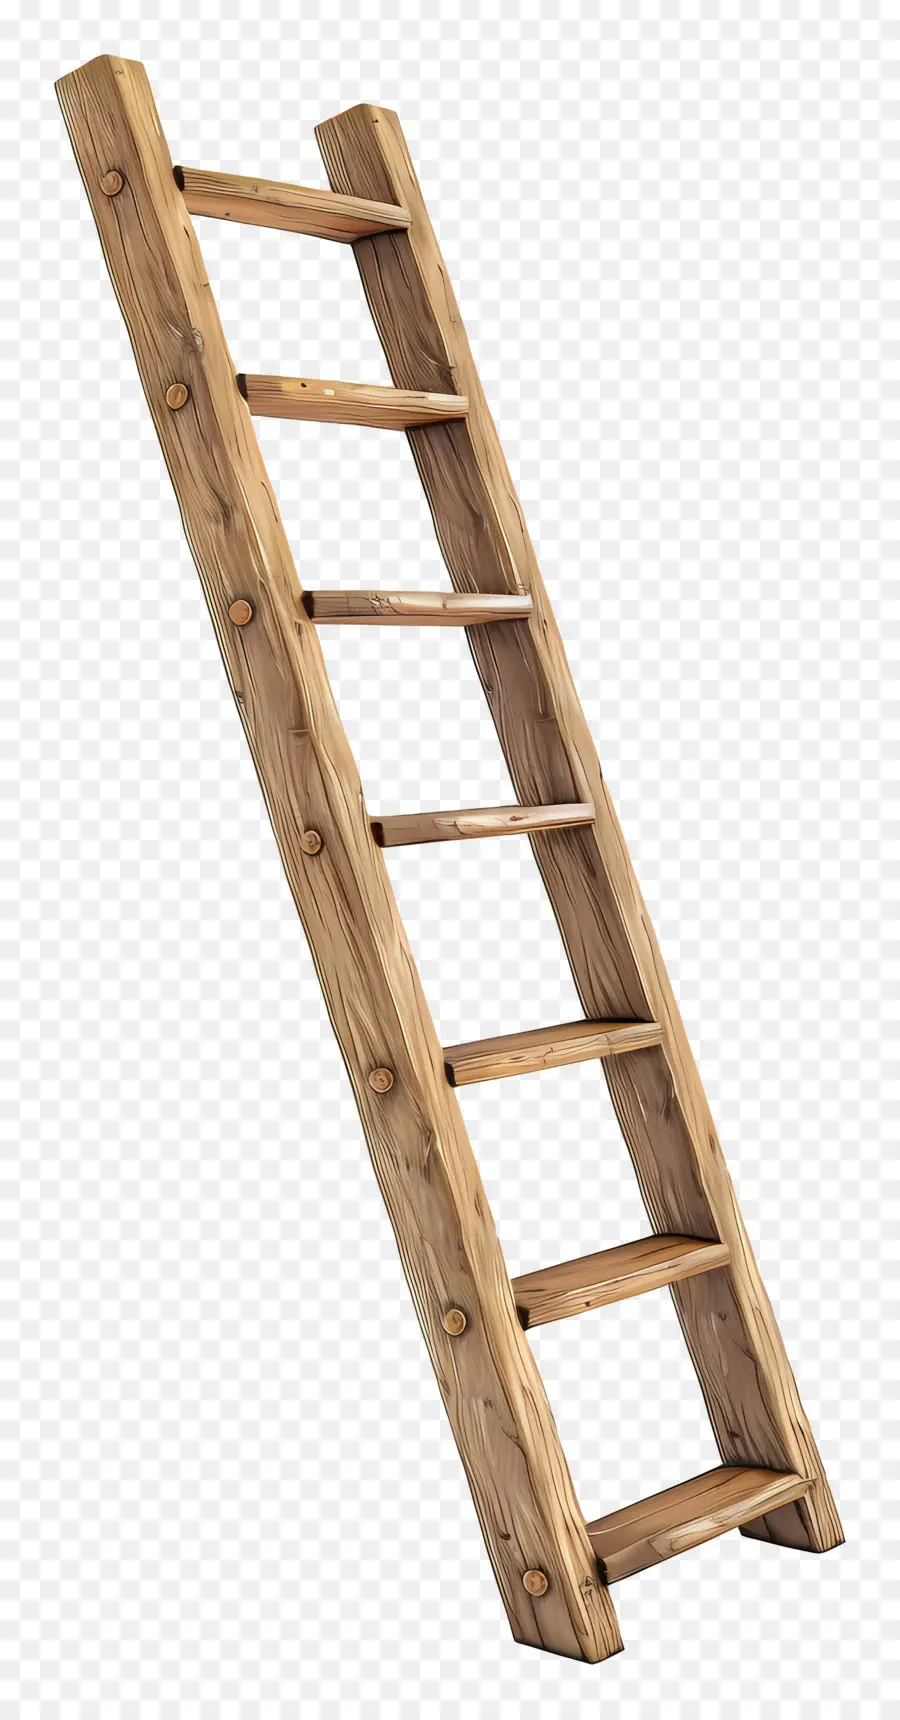 gỗ thang - Thang gỗ mạnh mẽ, được chế tạo tốt với hai nấc thang